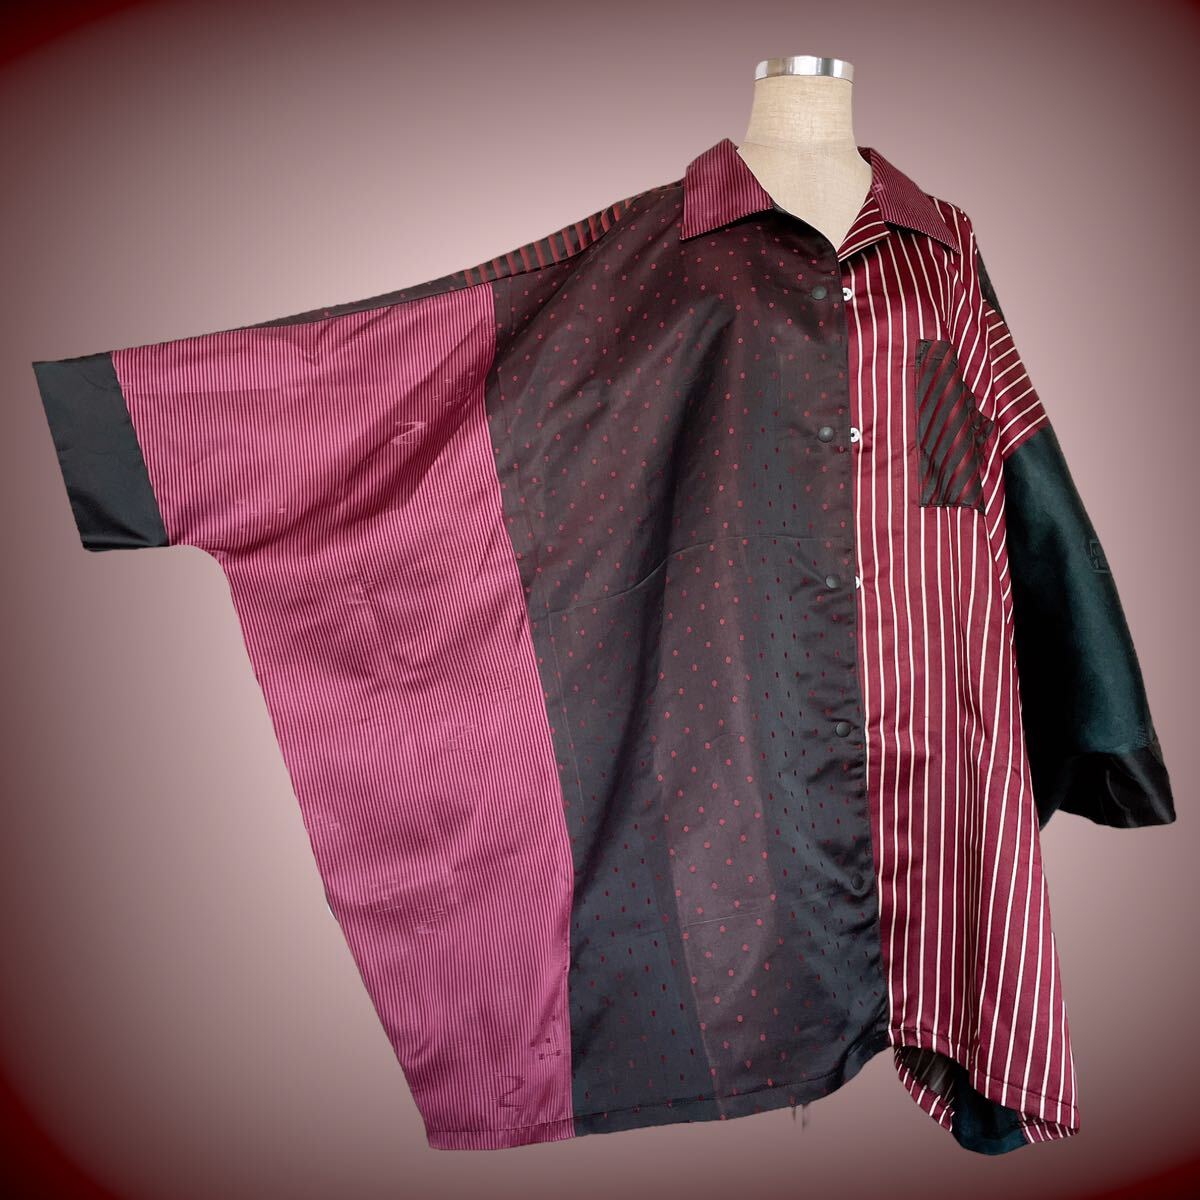 【心和】男女兼用 パッチワーク ドルマンシャツ ビッグシャツ アロハ 大きなサイズ対応 羽織 着物リメイクフリーサイズ N6509_画像8